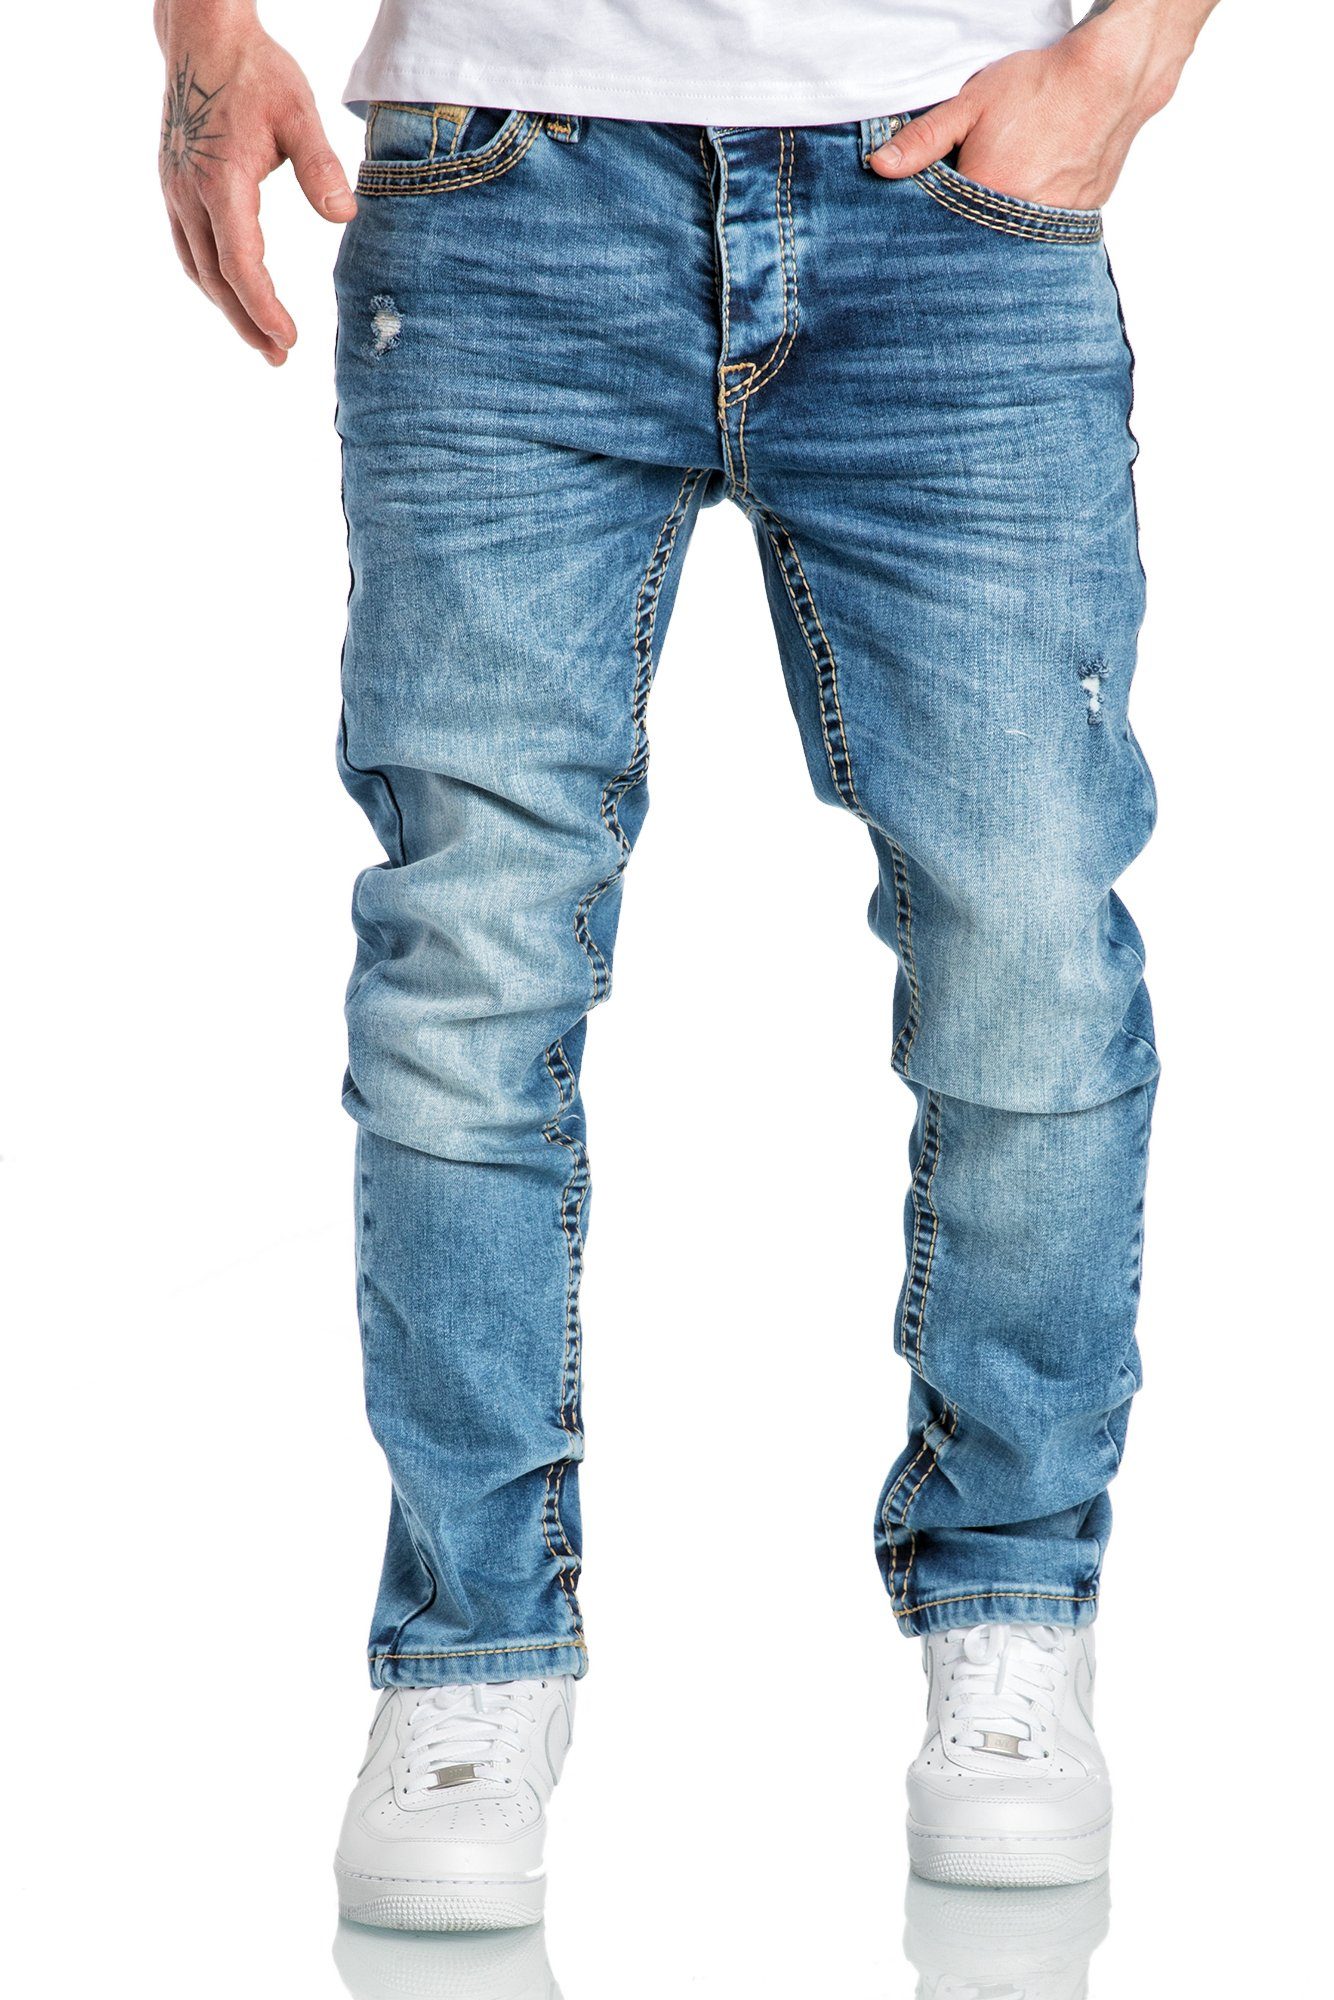 Jeans Destroyed ANCHORAGE Hellblau Herren Fit Hose Amaci&Sons Nähte Destroyed Denim Slim Slim Regular Stretch-Jeans Regular Dicke